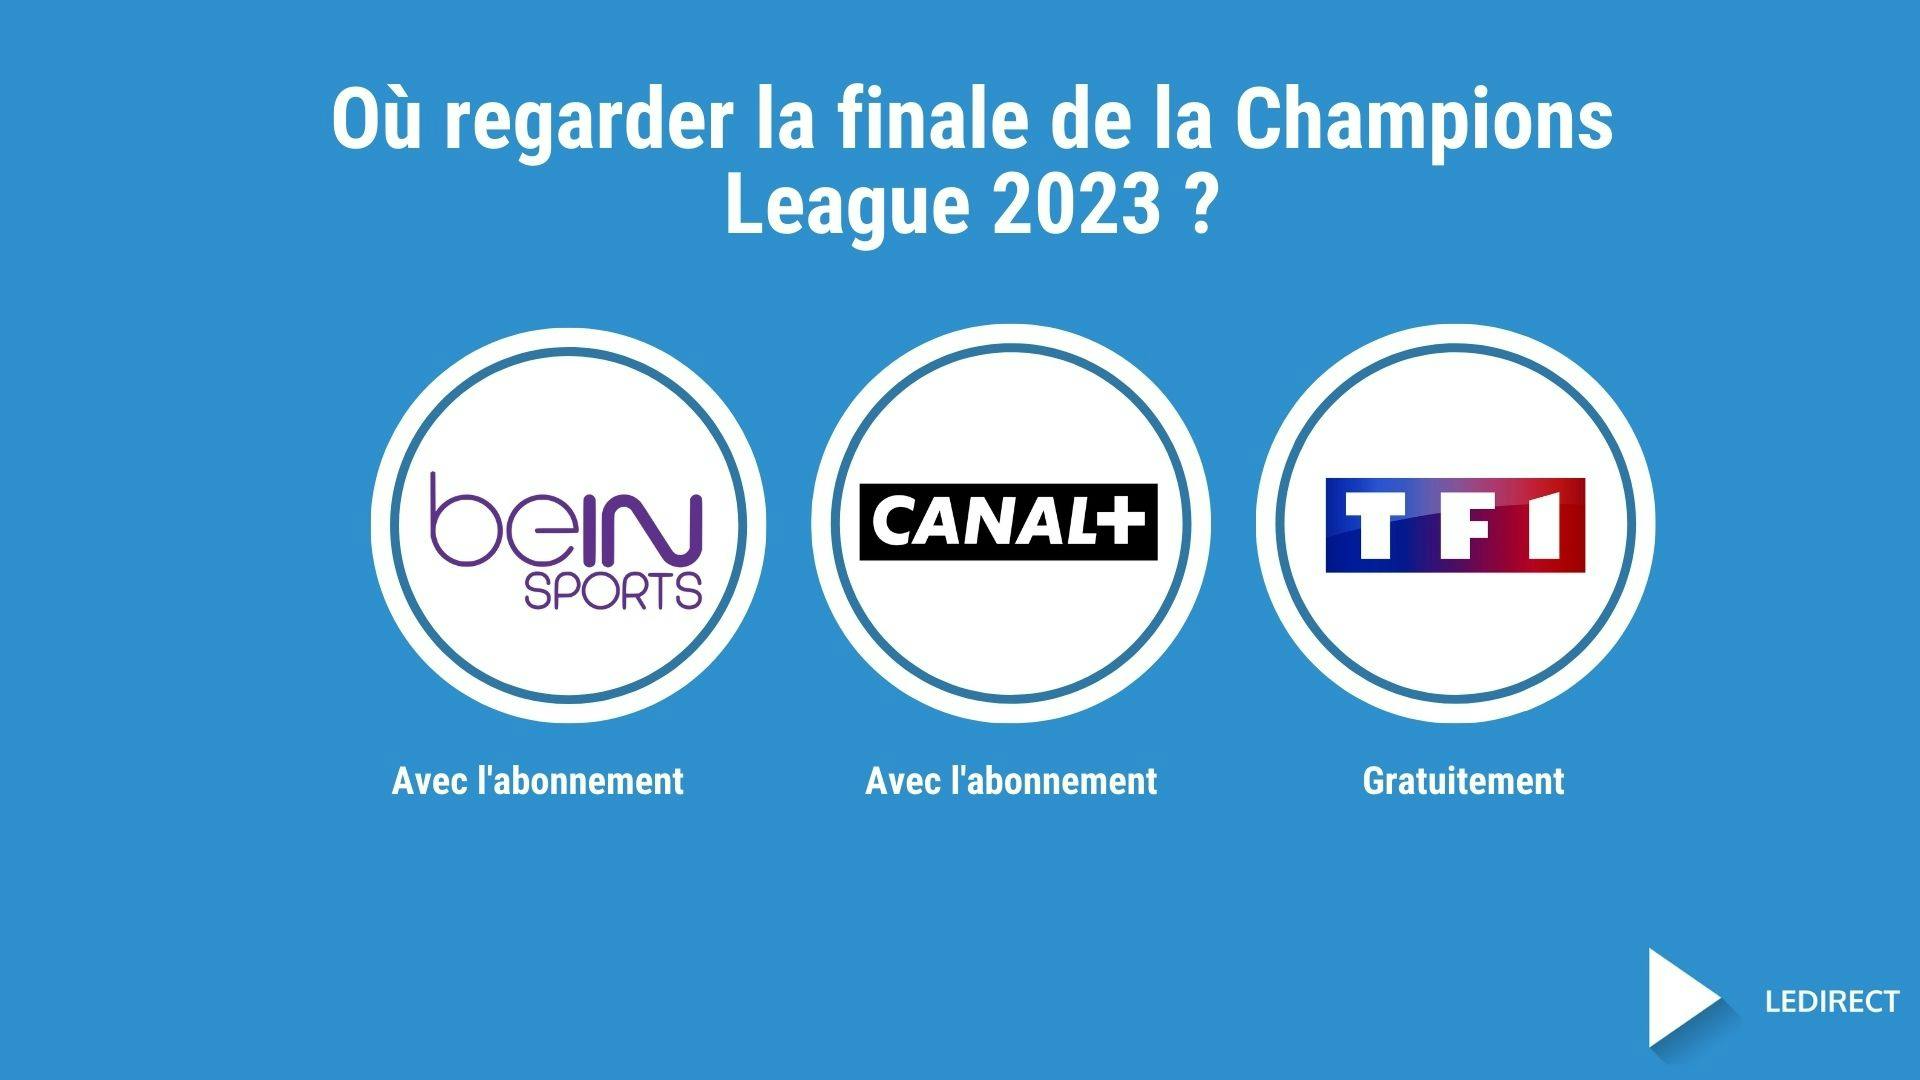 Image montrant 3 chaînes où l’on peut regarder la finale de la Champions League 2023